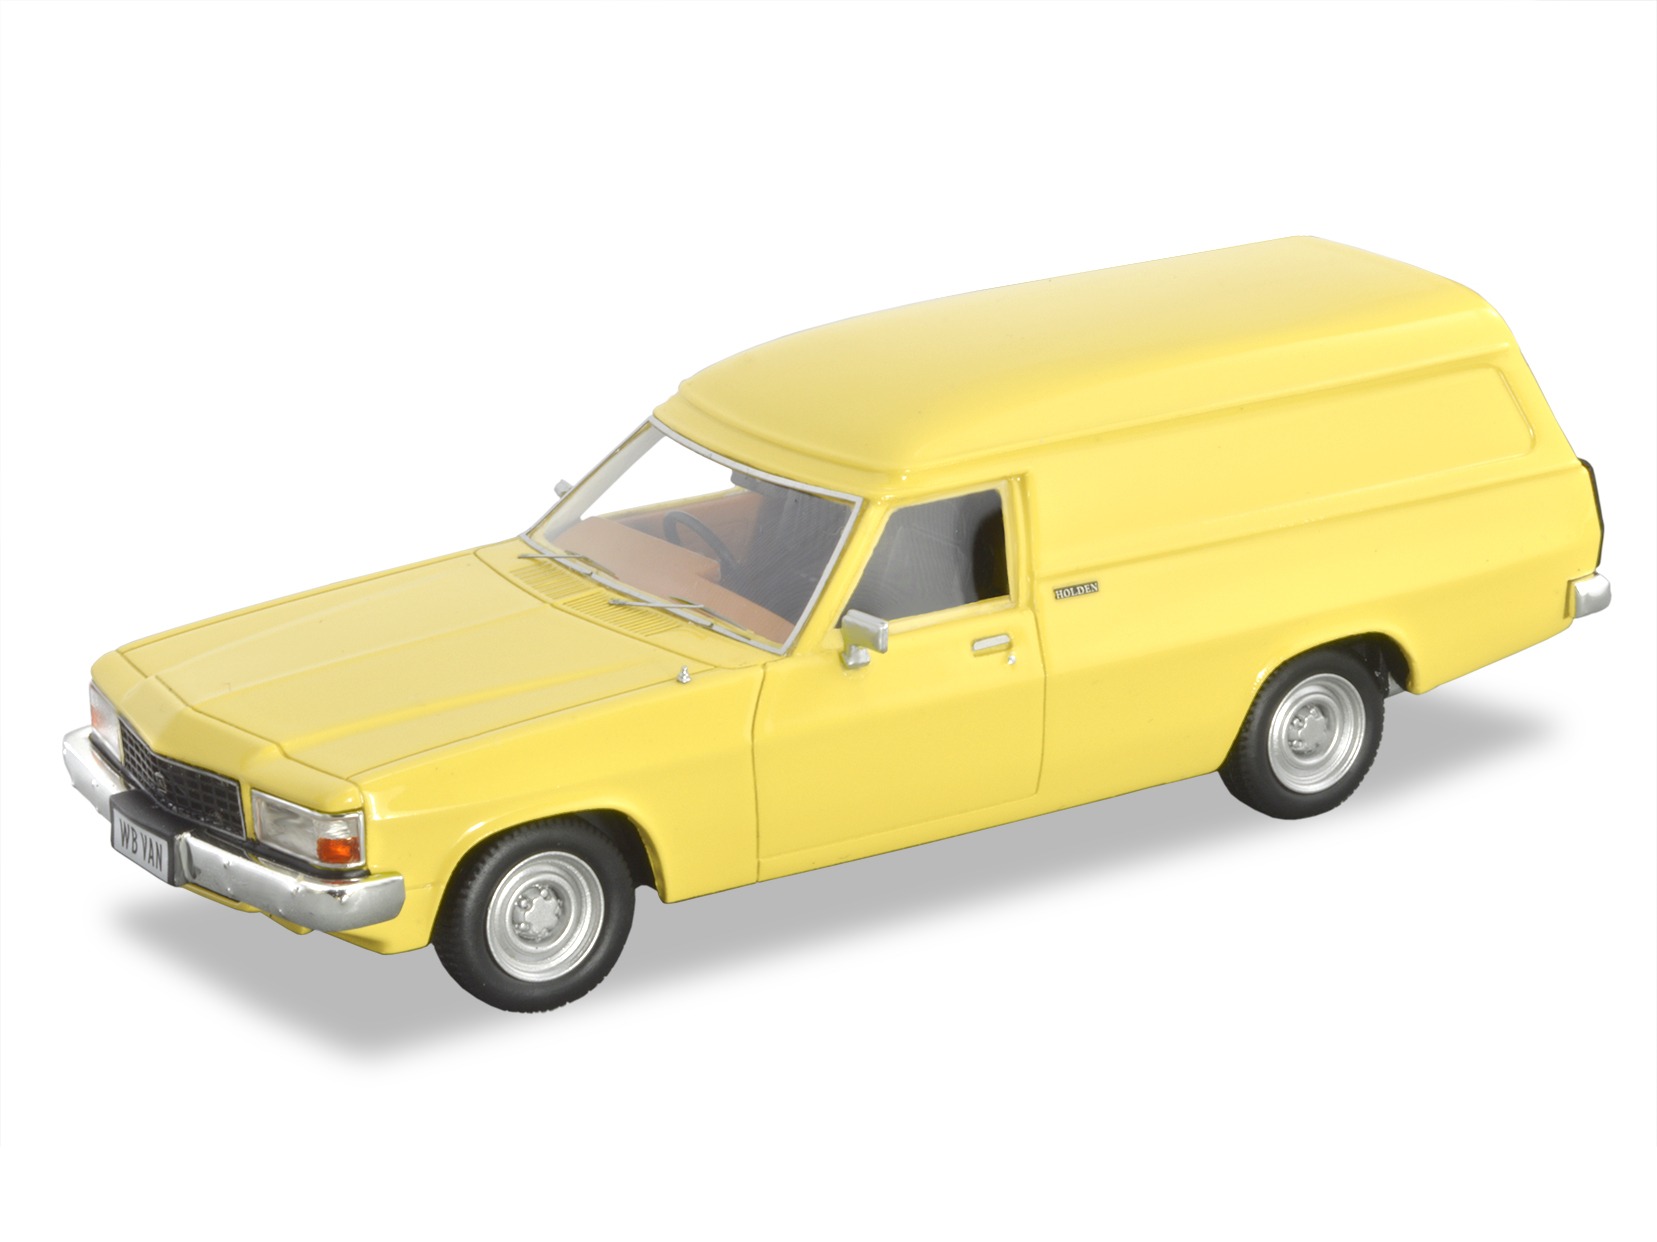 1982 Holden WB Panel Van – Yellow.